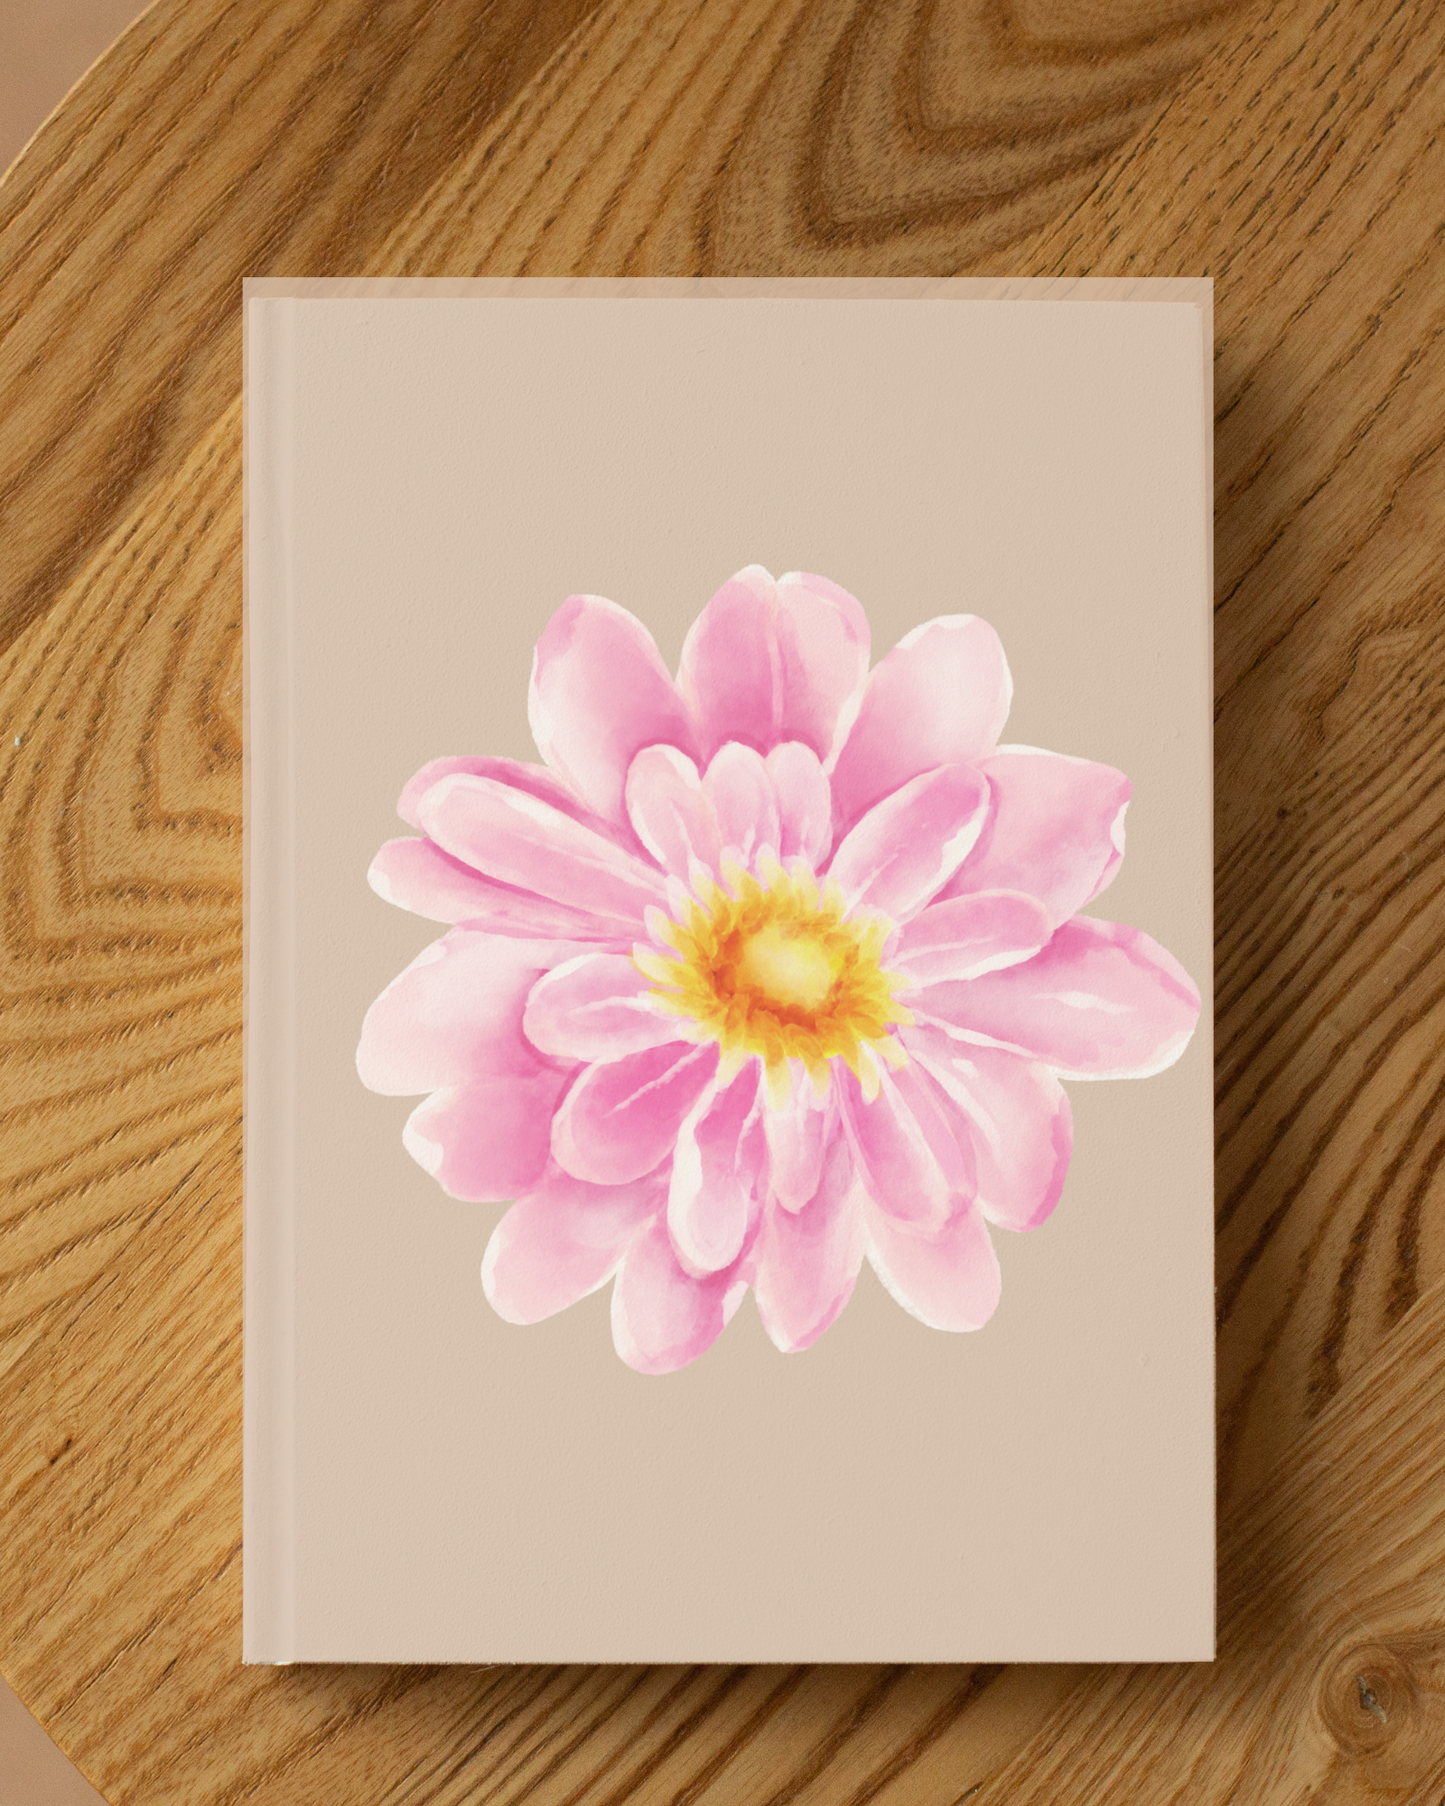 Blossom Hardcover Journal, Pink Journal, Pink Flower Journal, Flower Design Journal, Cute Design Journals, Personal Journal, Stylish Journal, Hardcover Journal Matte